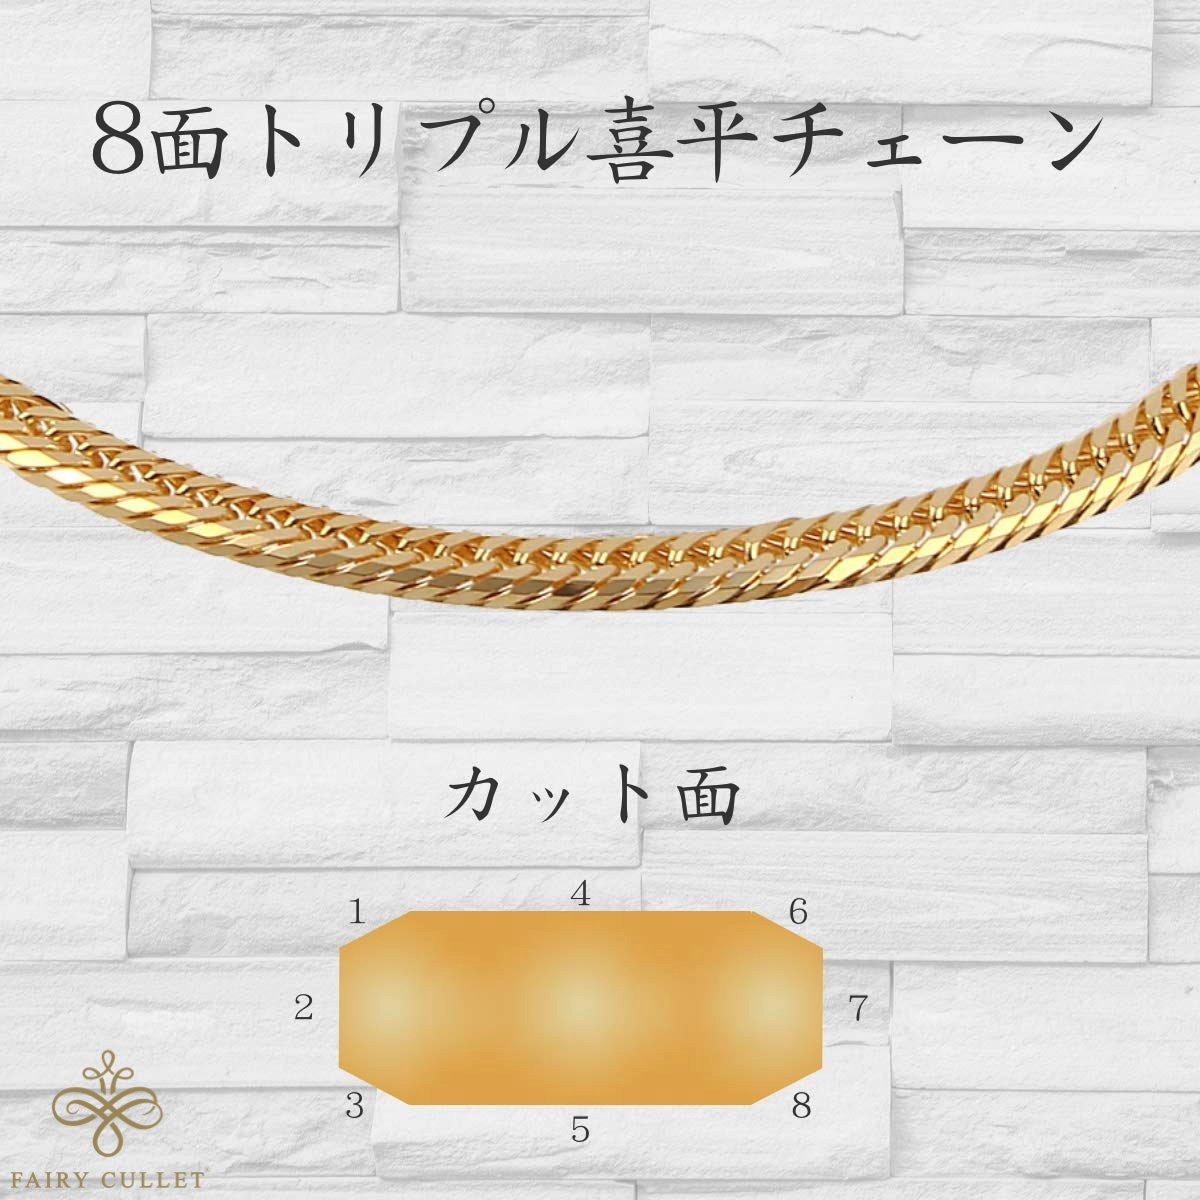 18金ブレスレット 8面トリプル喜平チェーン 日本製 18金 5g 18cm 中